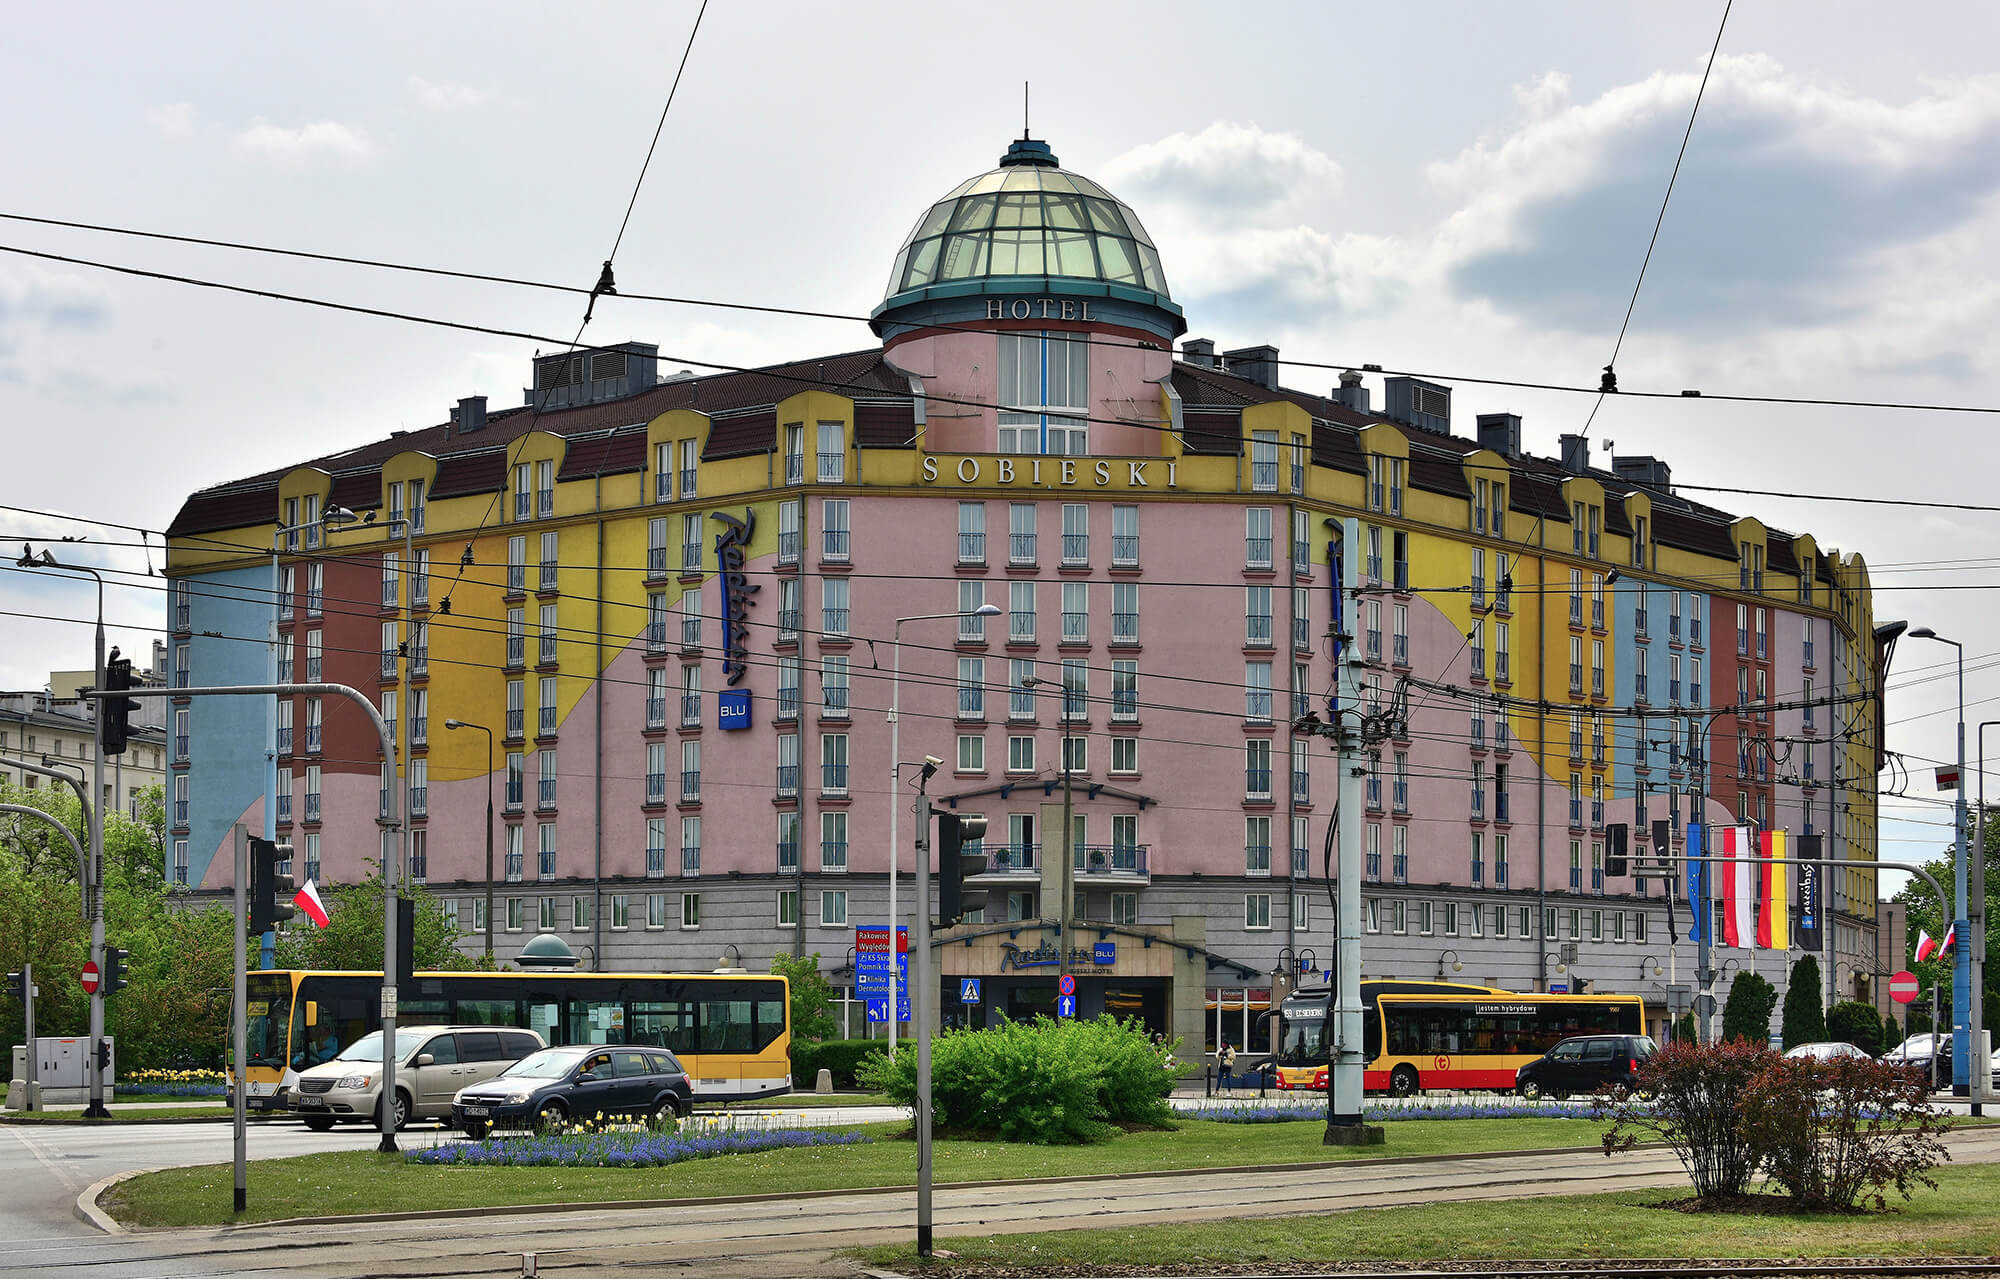 Radisson_Blu_Sobieski_Hotel_plac_Zawiszy_2019